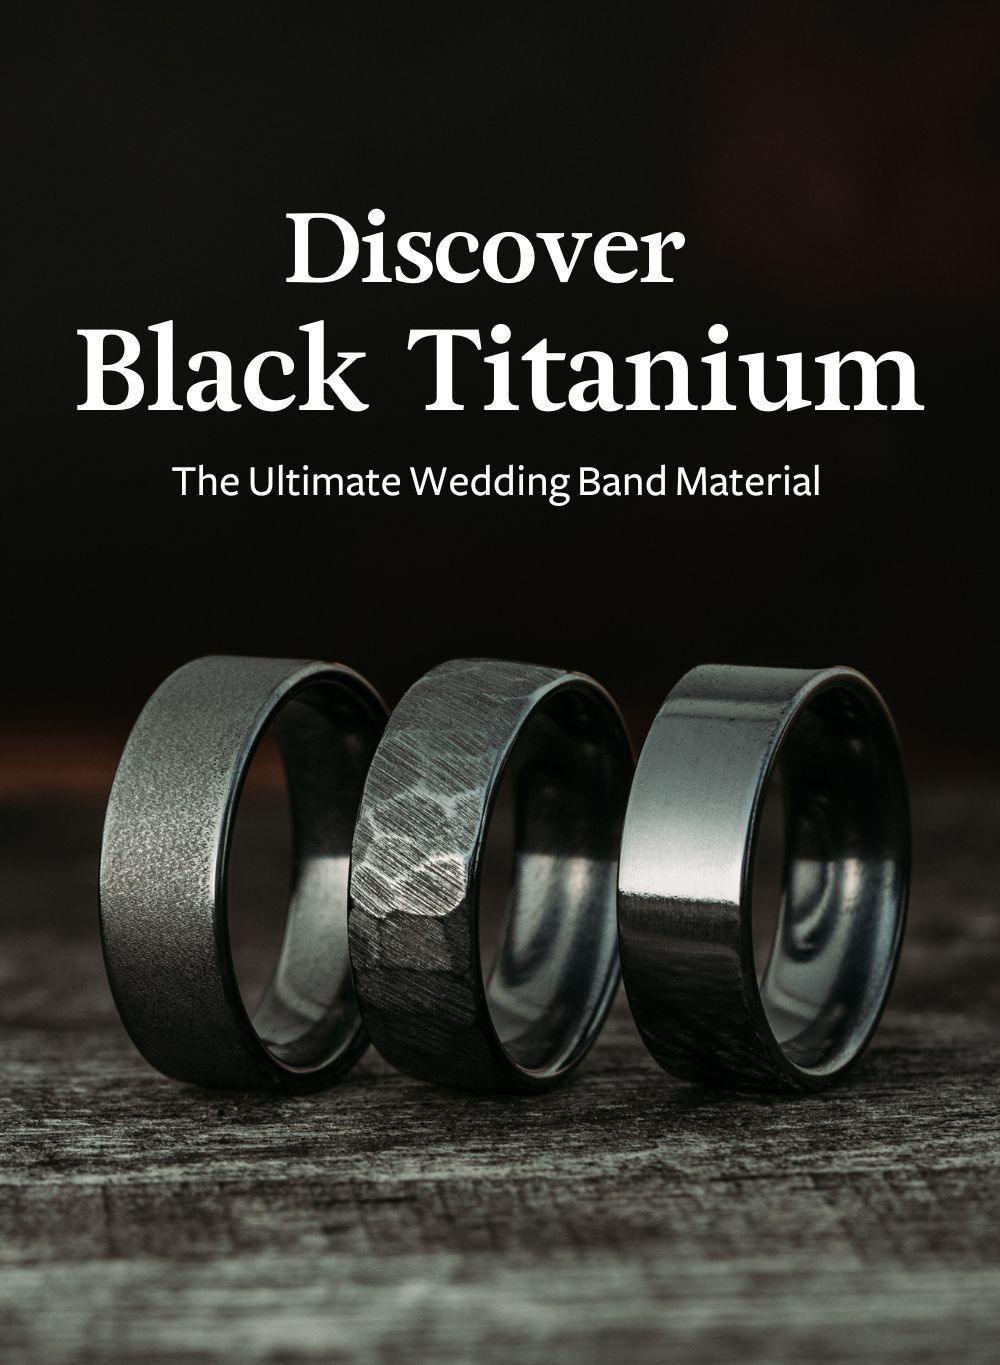 Rustic and Main Men's Apollo Noir Hammered Black Titanium Wedding Band